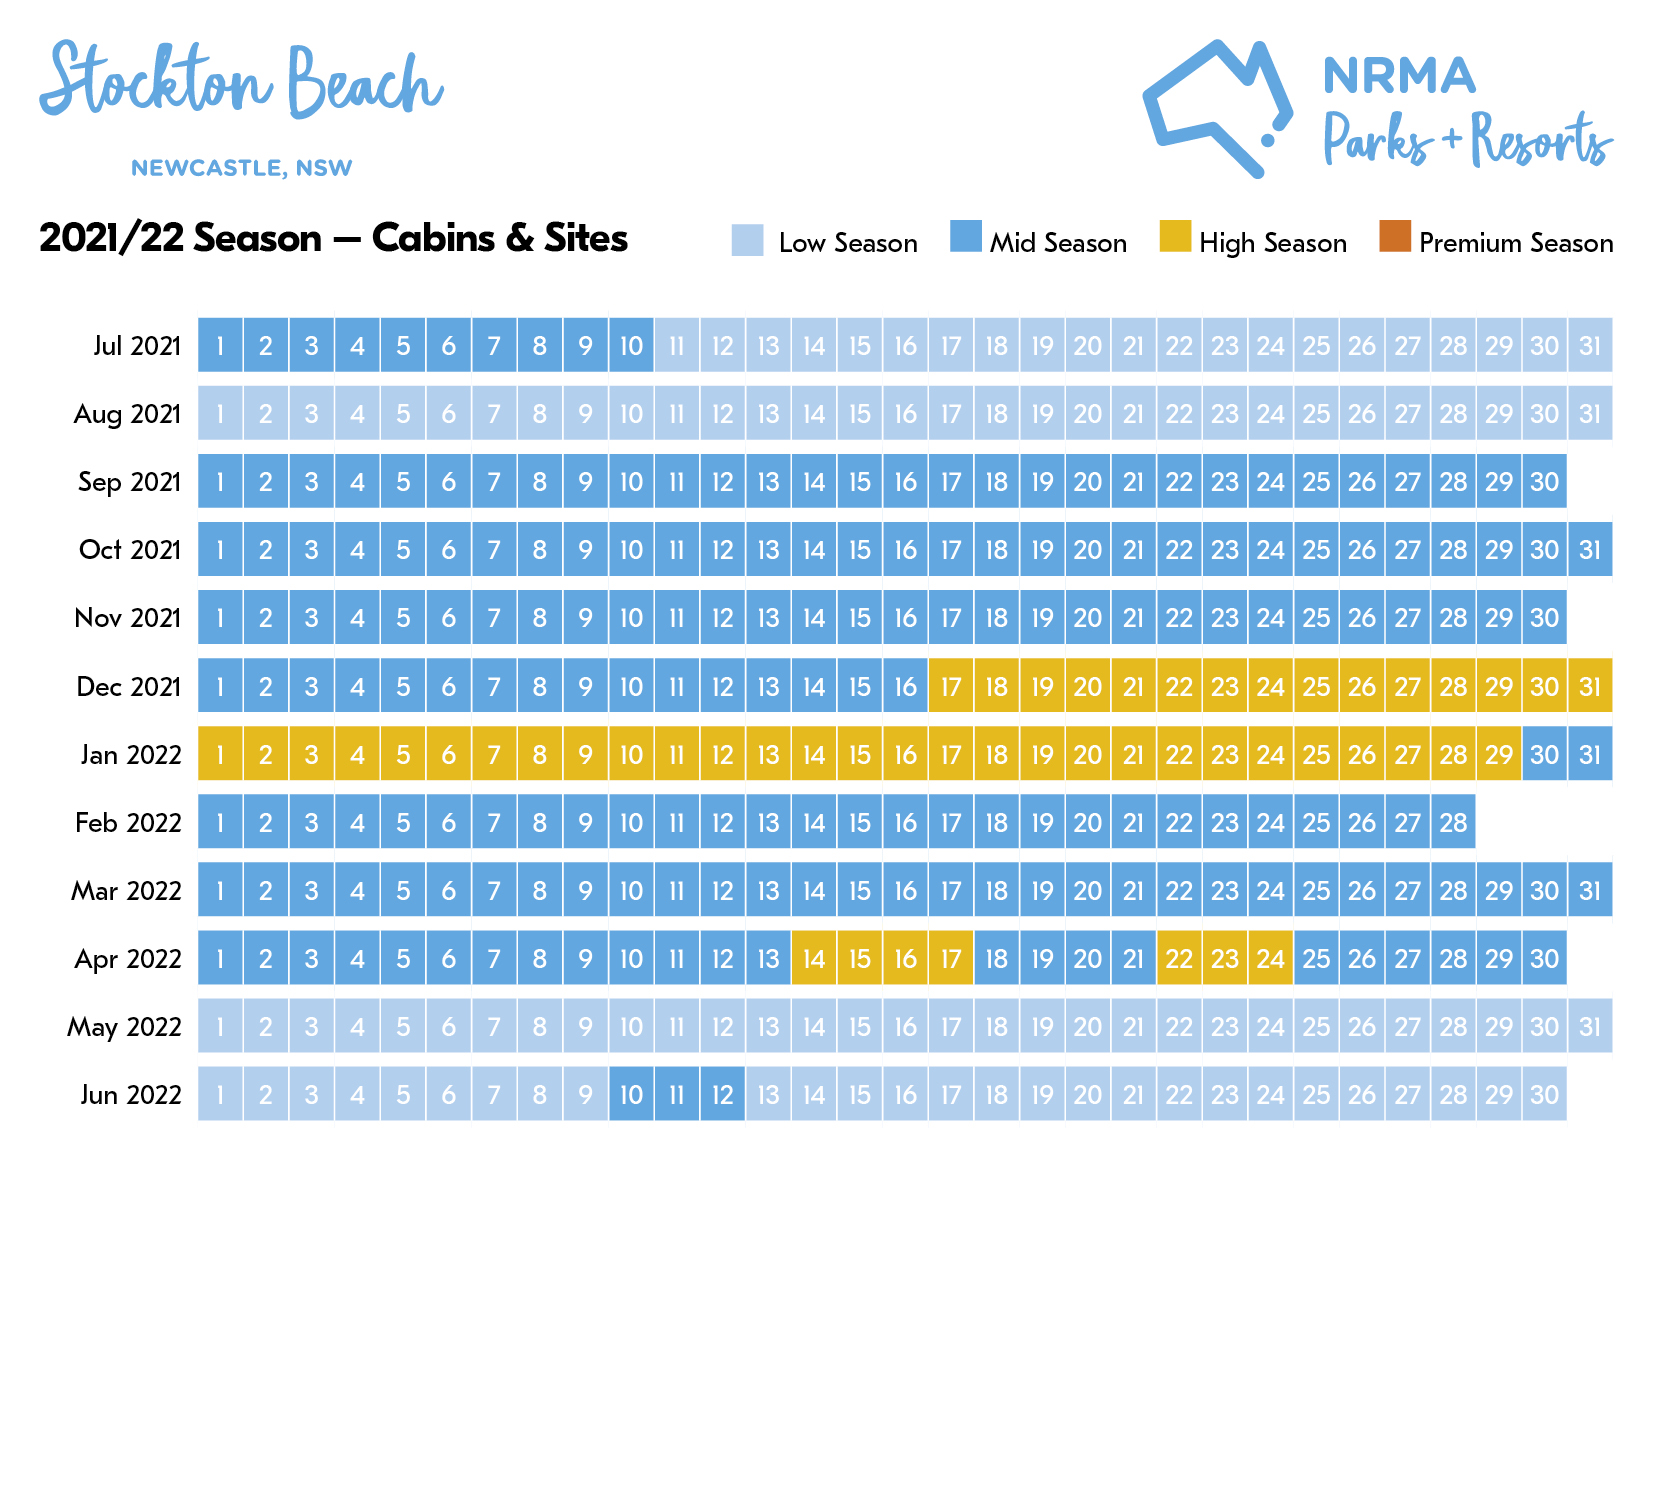 stockton beach season calendar 2021-2022